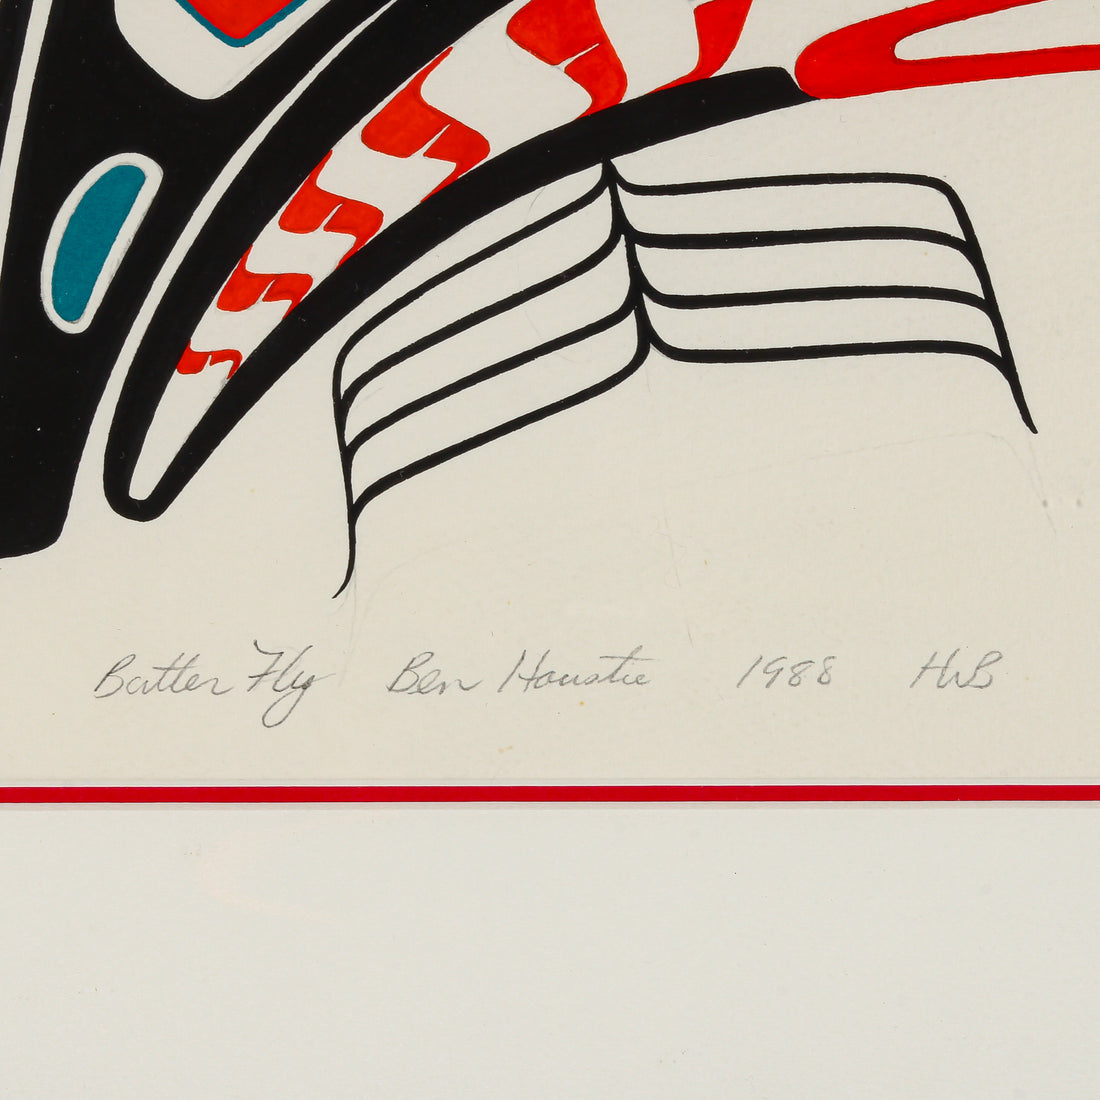 Ben Houstie - "Butter Fly" - Silkscreen/Serigraph on Paper